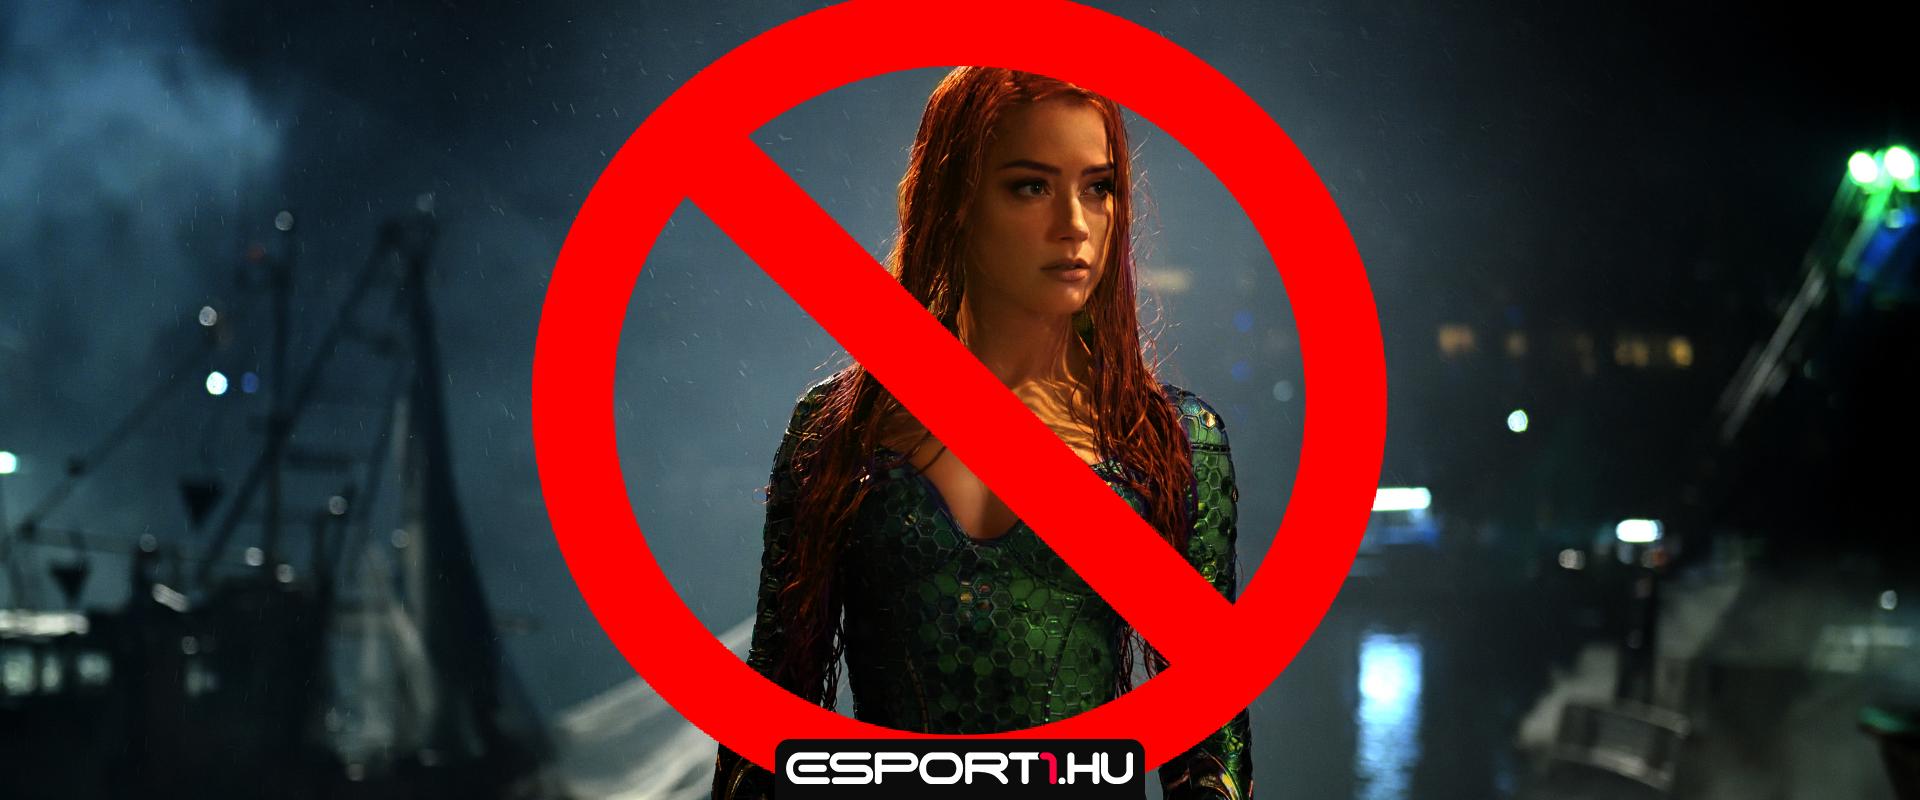 Milliók követelik Amber Heard kivágását az Aquaman 2-ből